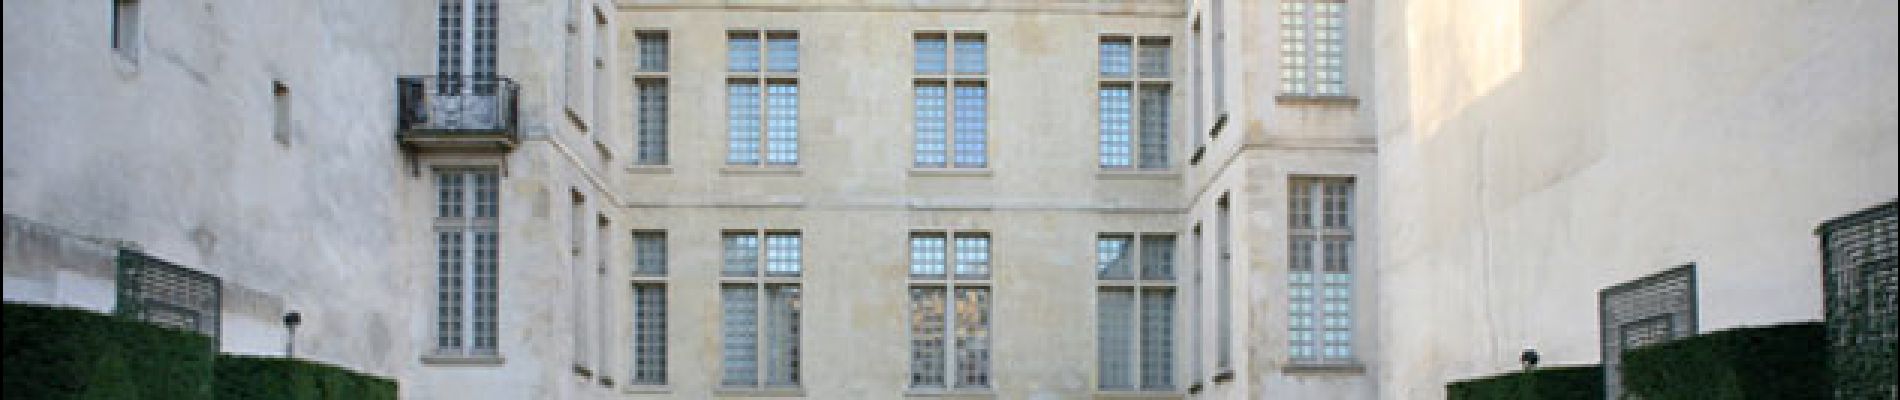 Point d'intérêt Paris - Musée Cognacq-Jay - Photo